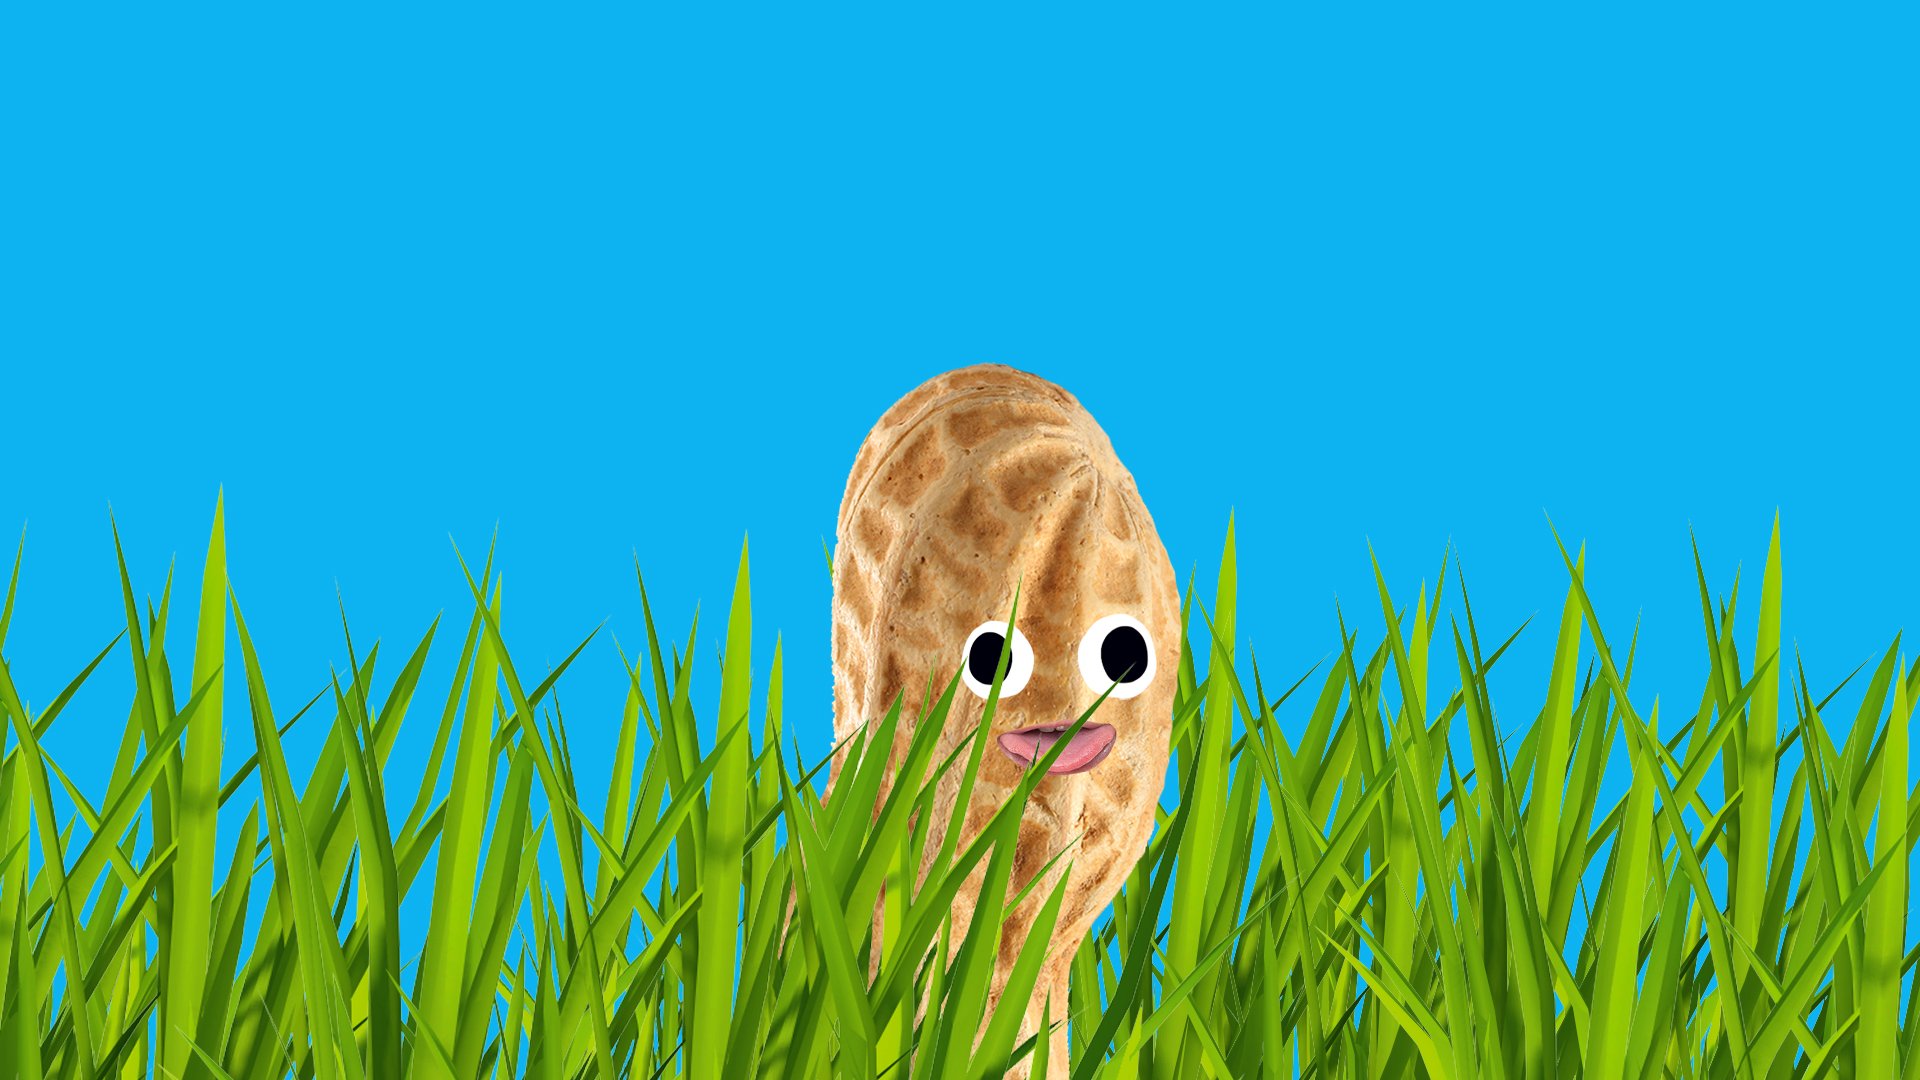 peanut in the grass